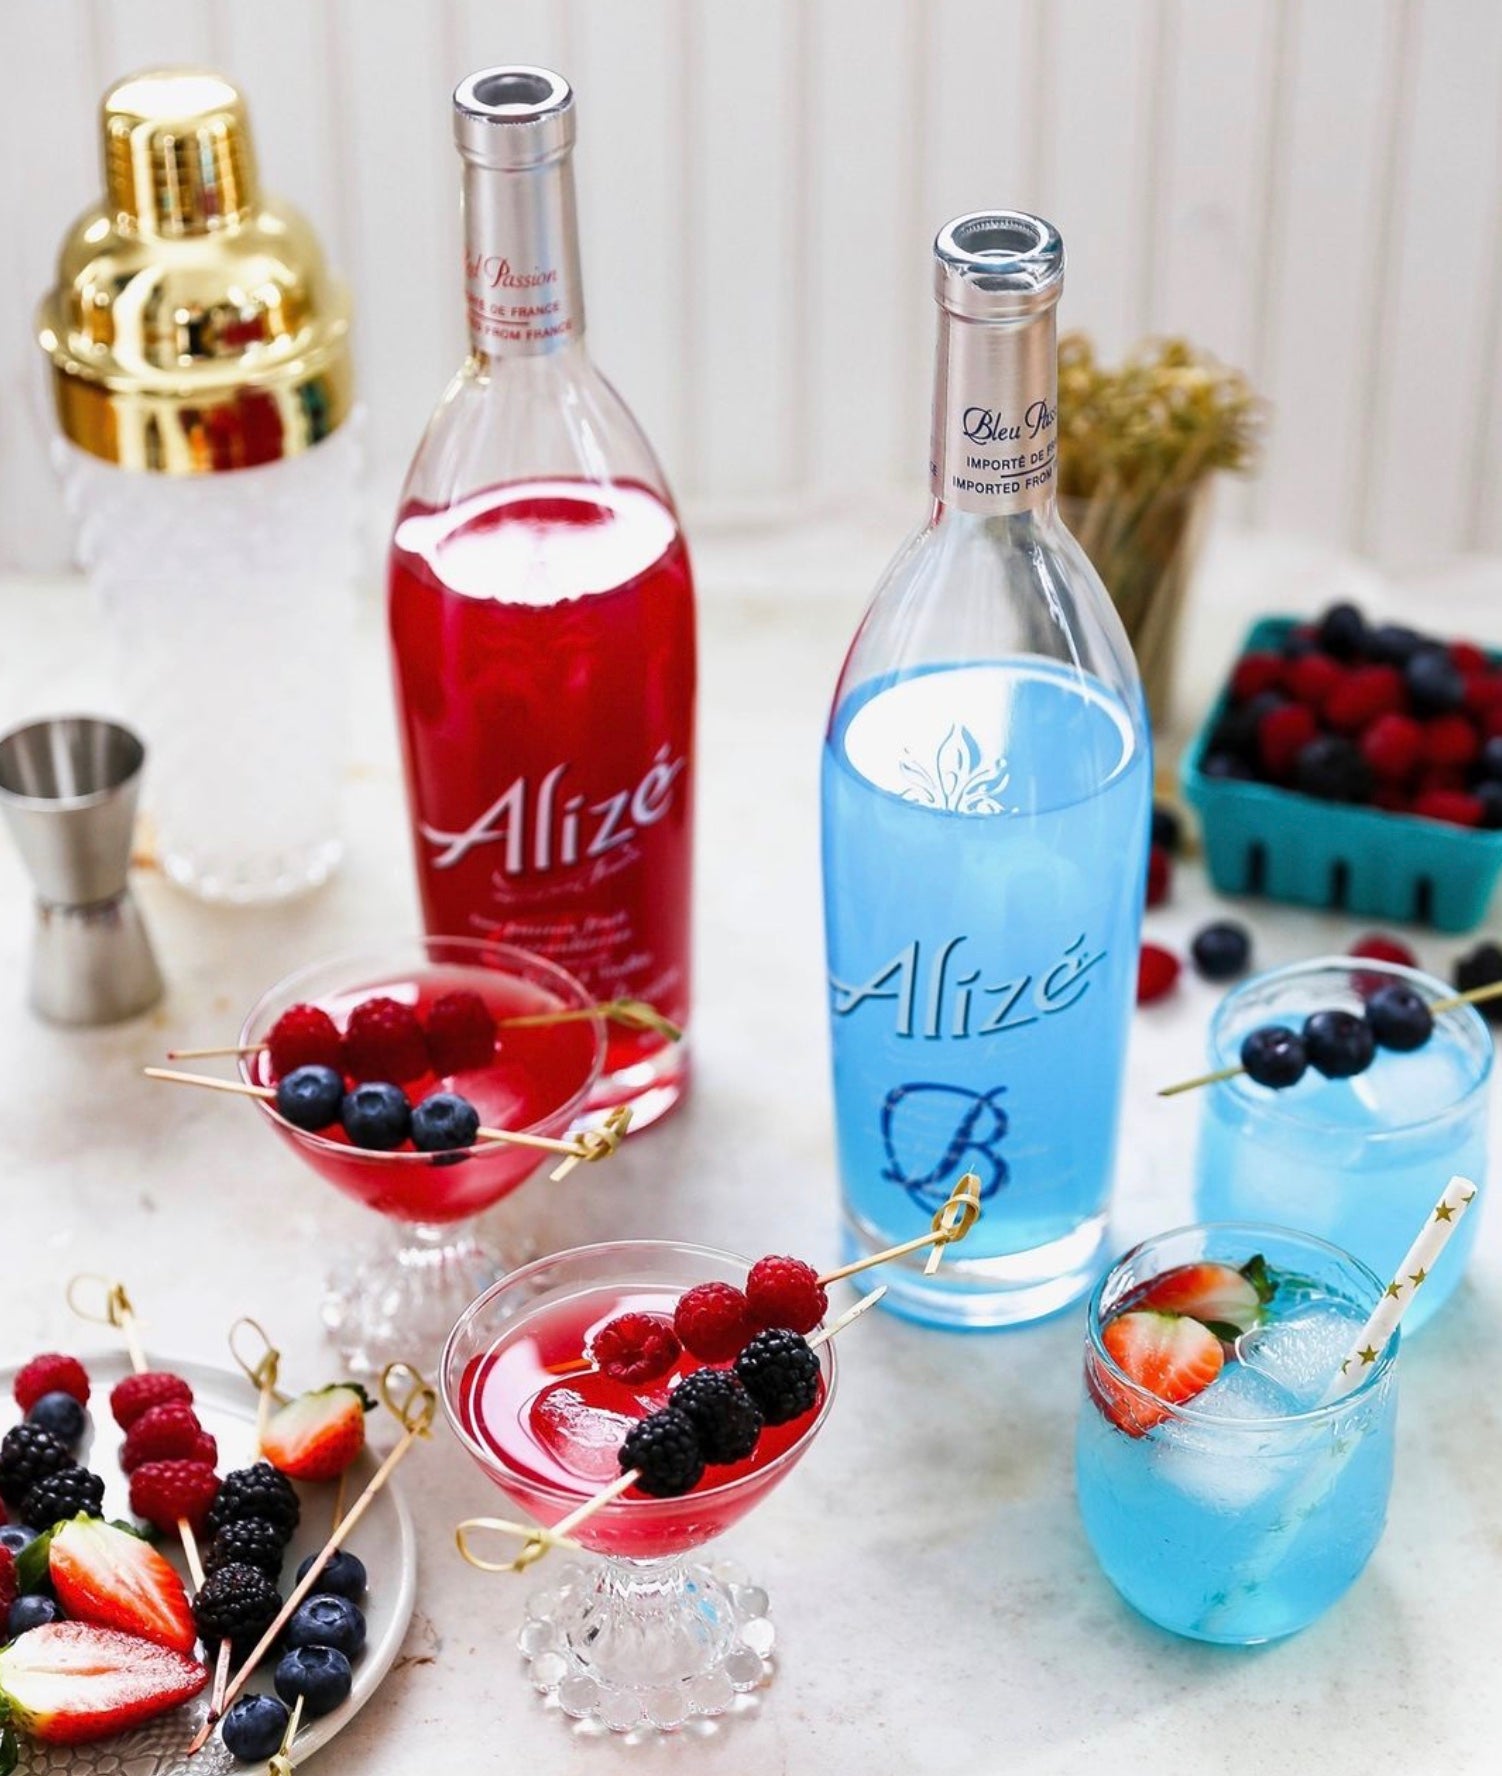 Alize Bleu - 750 ml